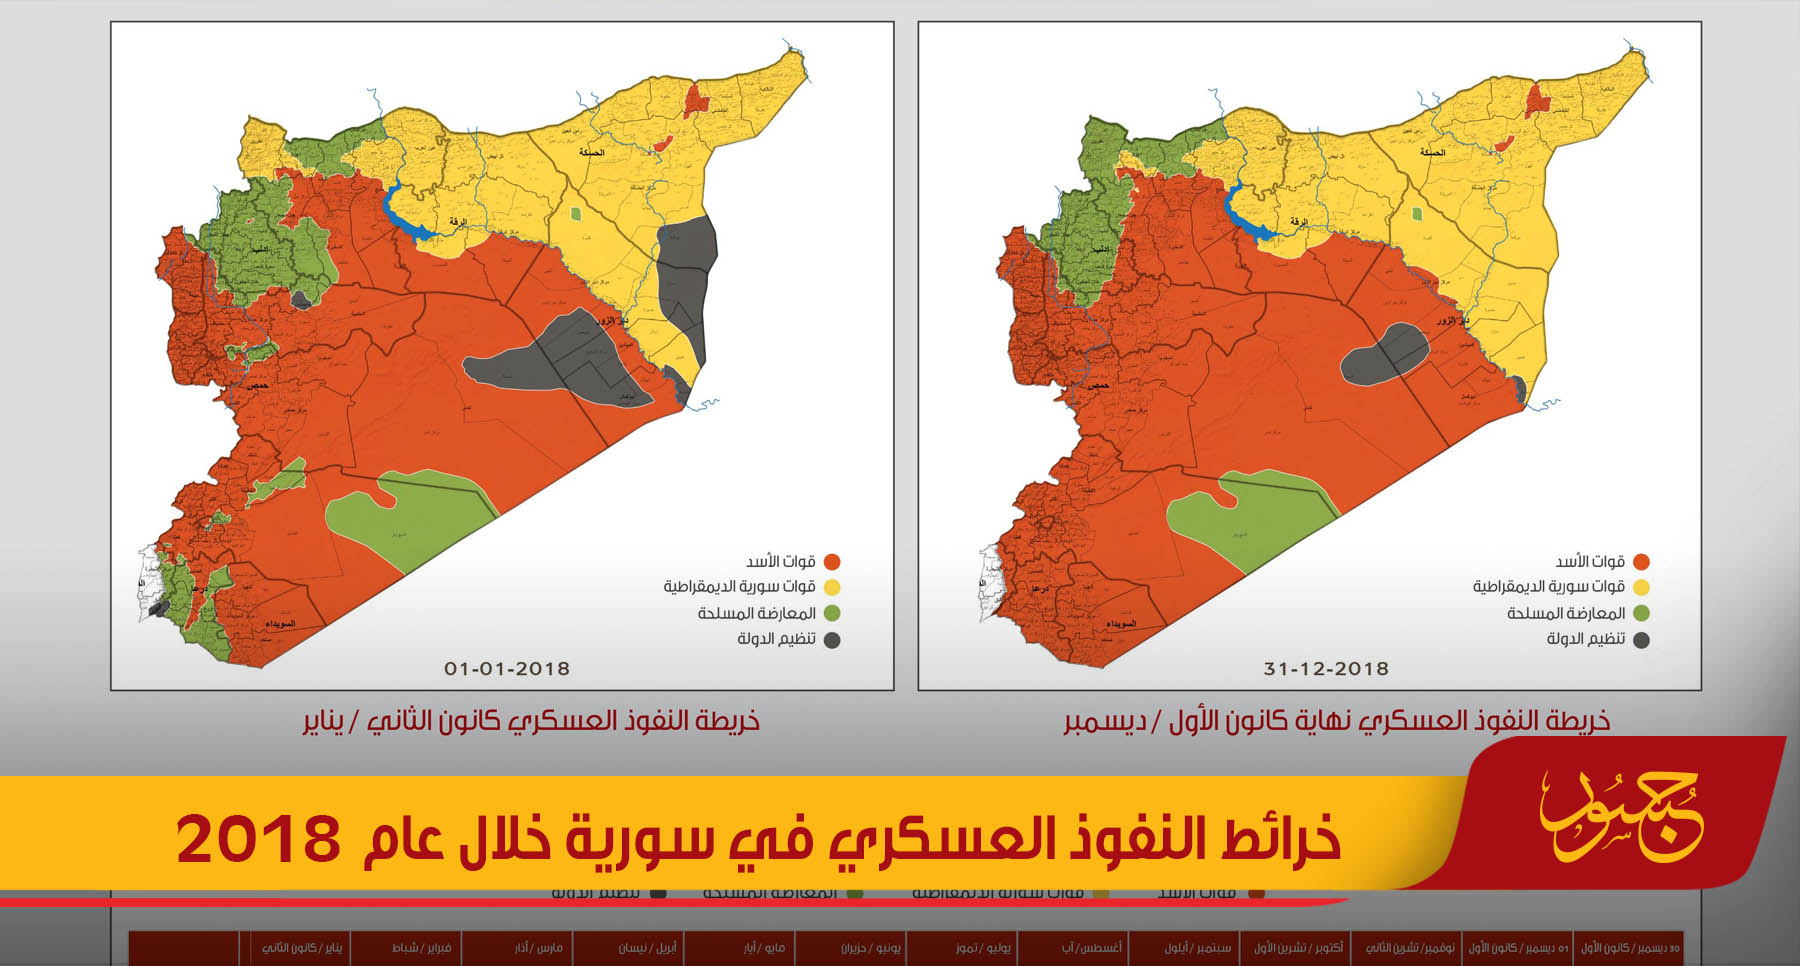 خريطة النفوذ العسكري في سورية لعام 2018